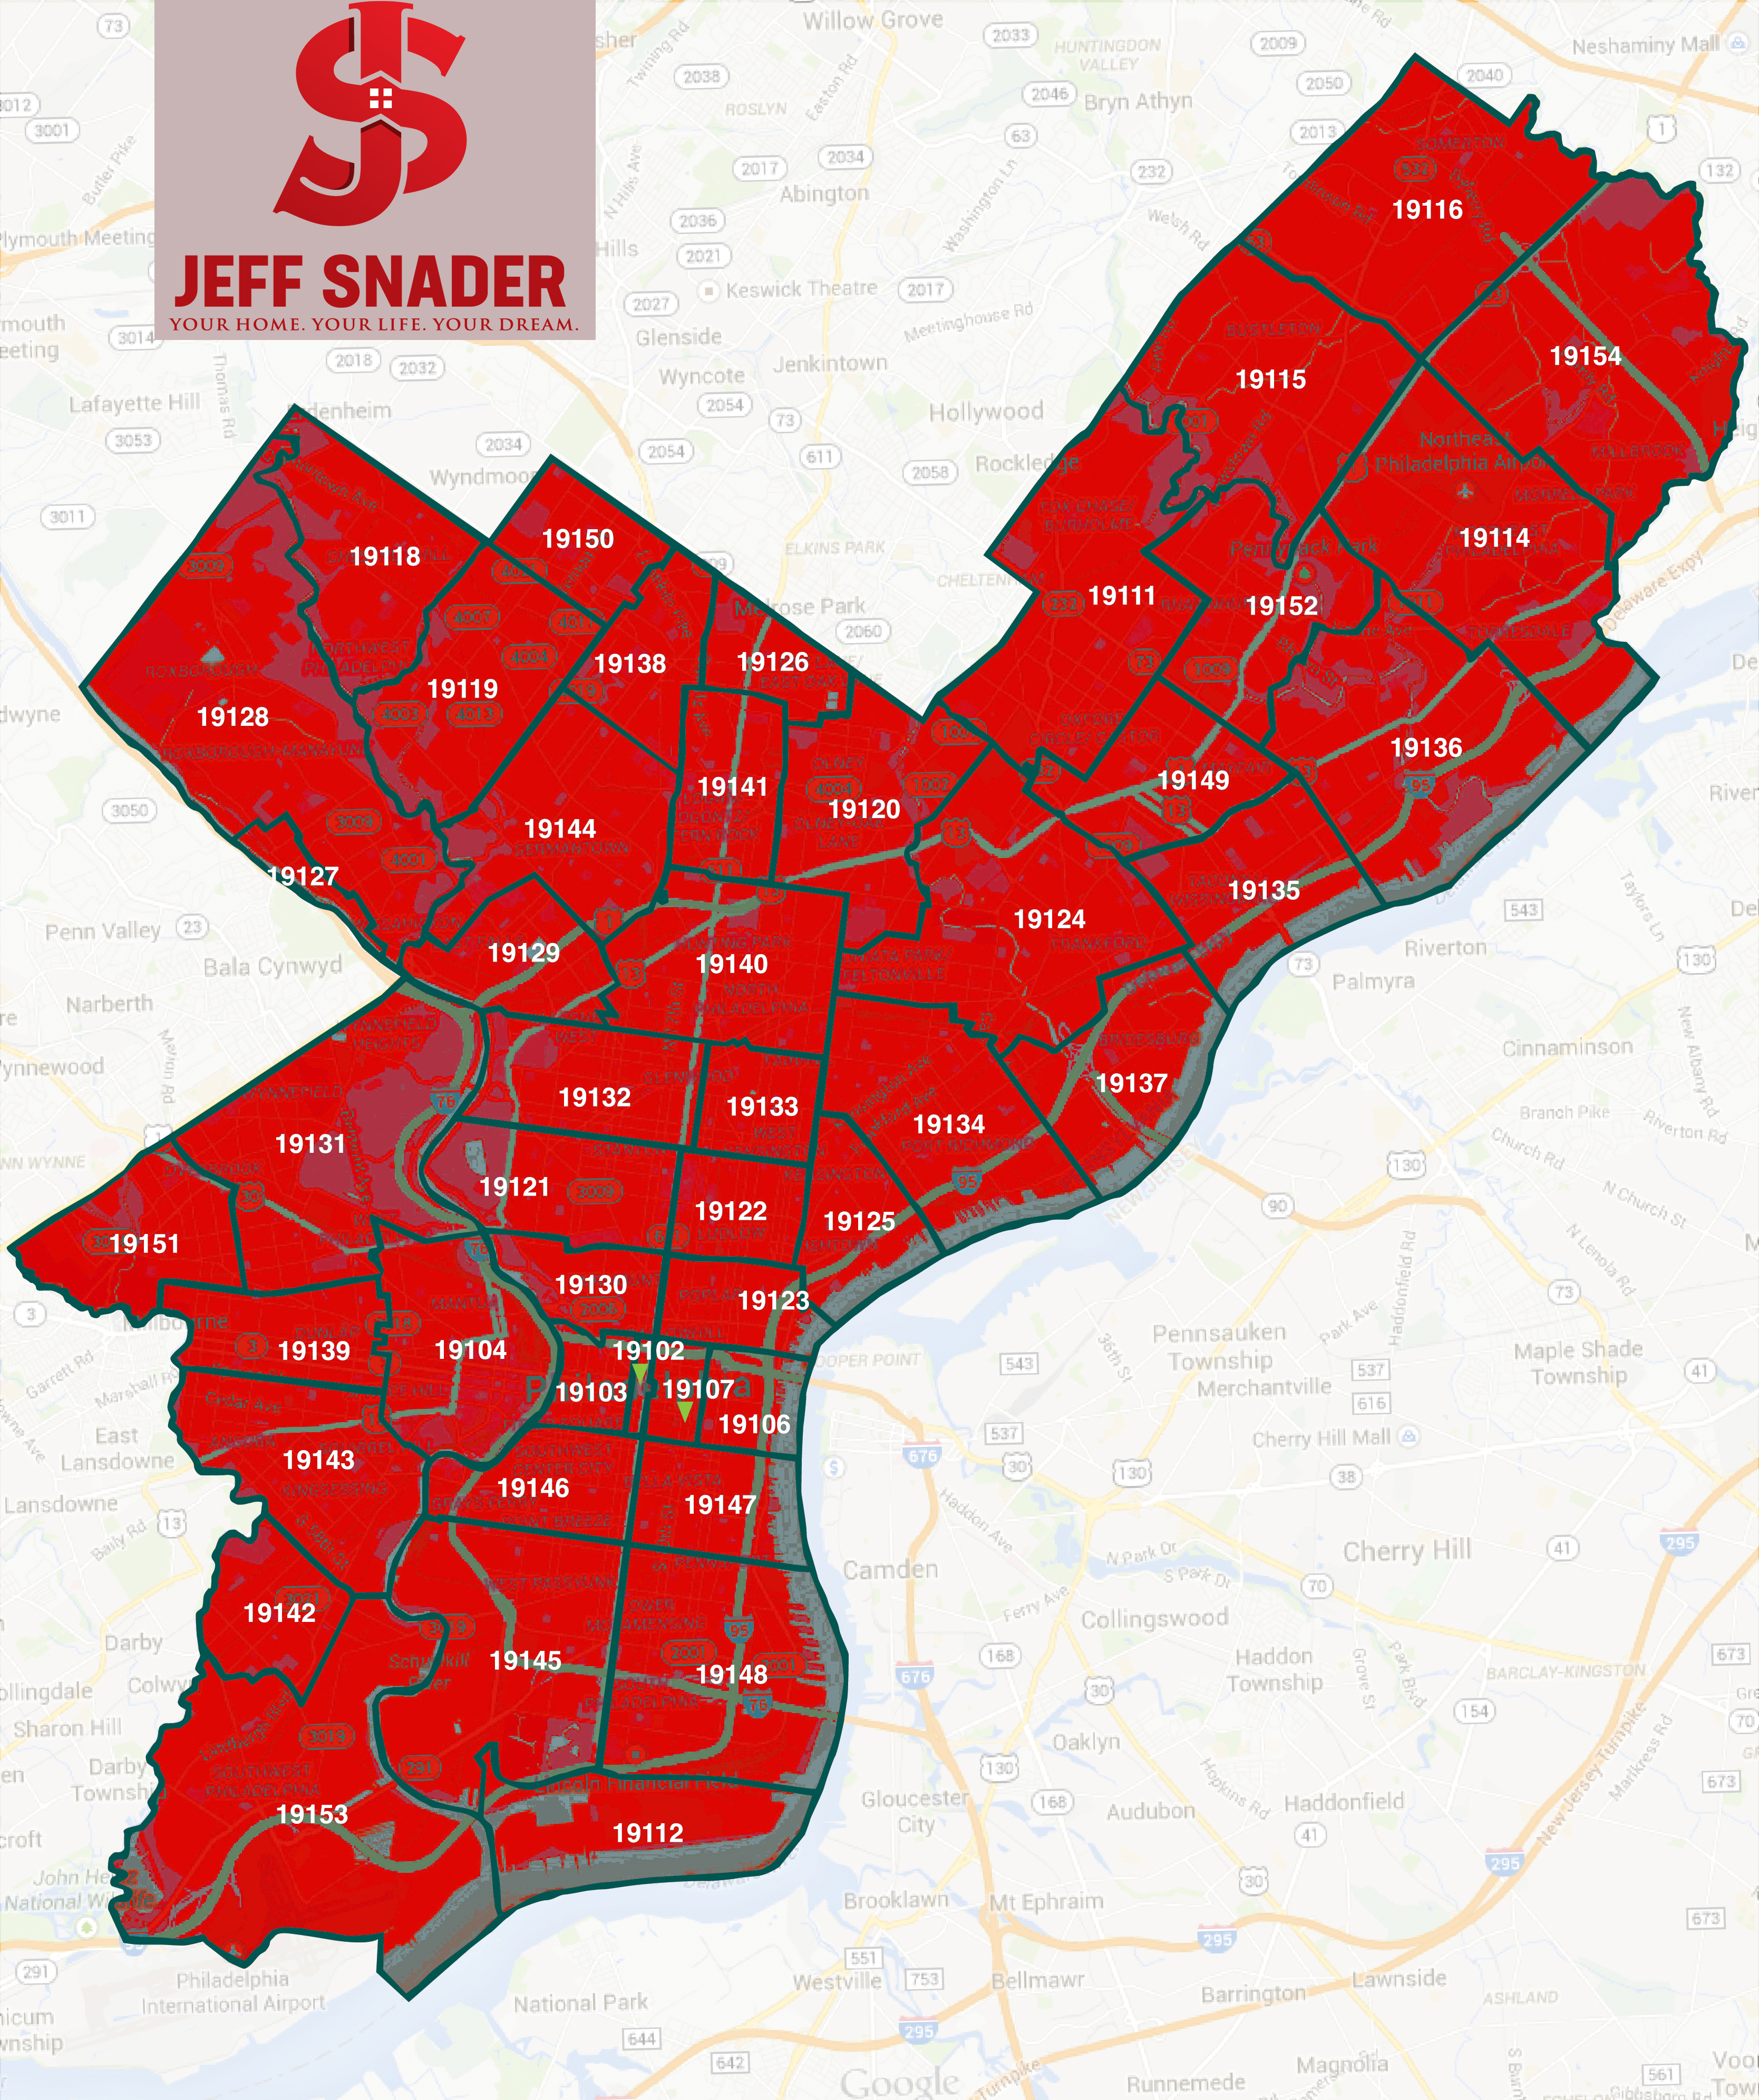 Philadelphia Zip Codes And Neighborhoods